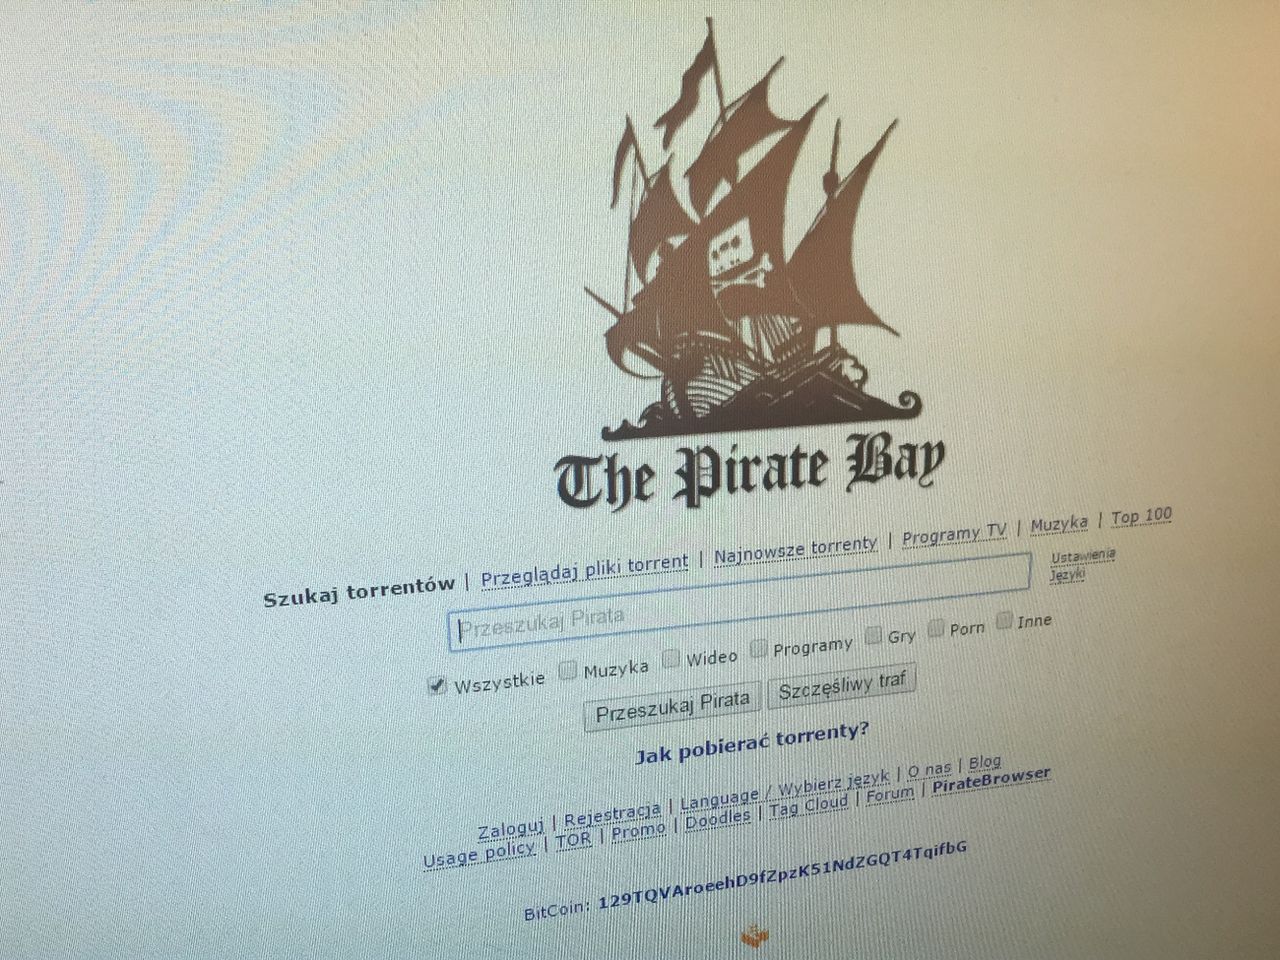 Koniec torrentów? The Pirate Bay zablokowany wyrokiem sądu